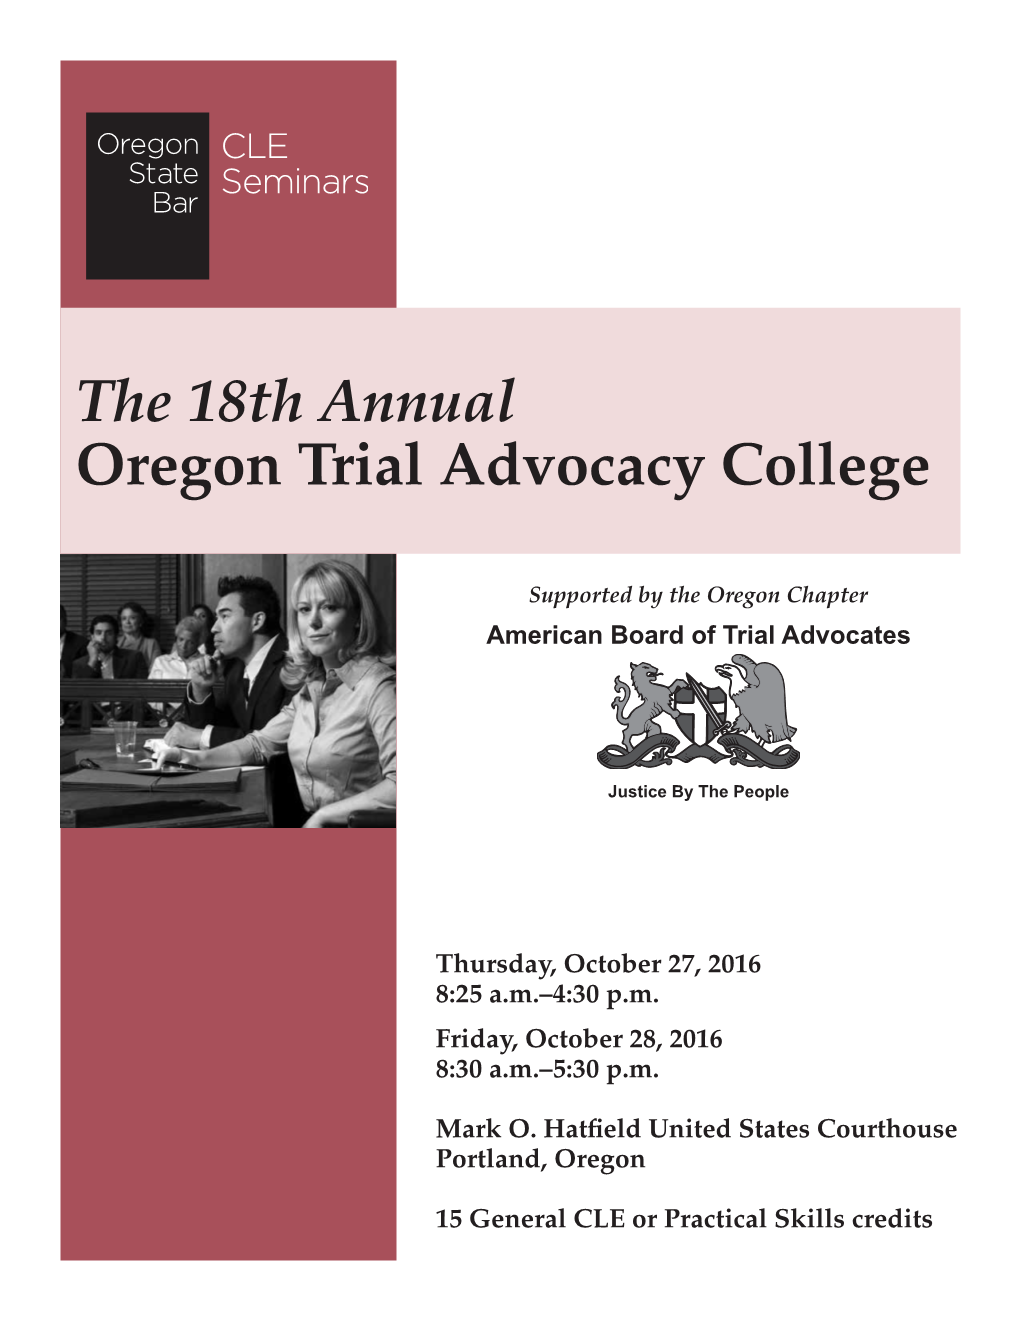 The 18Th Annual Oregon Trial Advocacy College